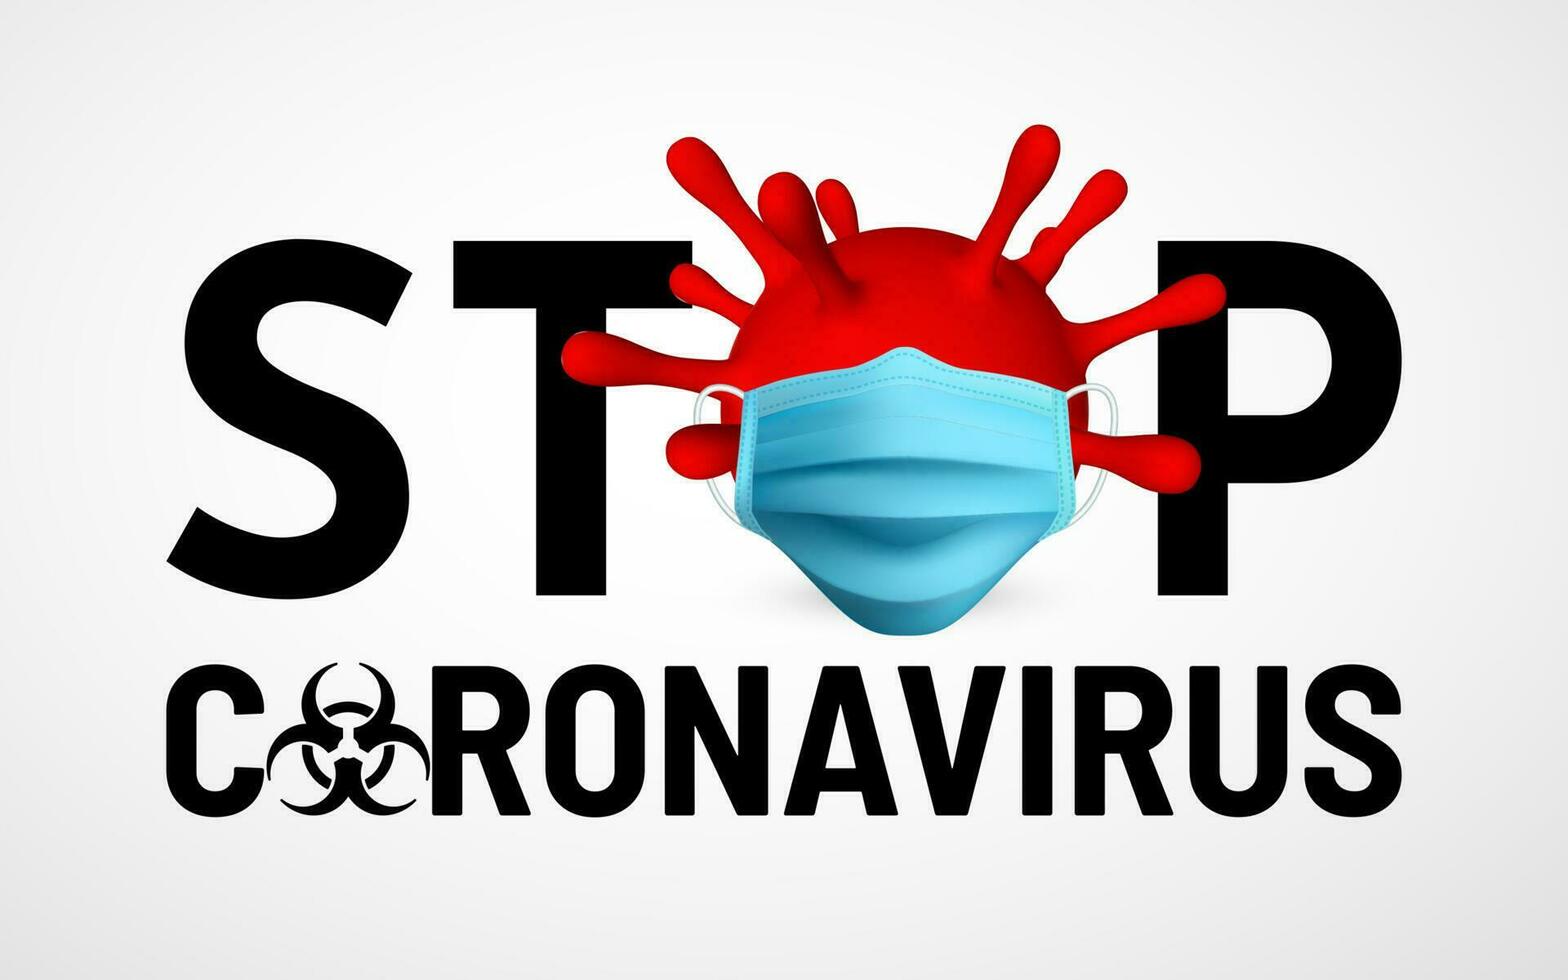 hou op coronavirus covid19, 2019-nkov. illustratie van virus eenheid medisch masker. wereld pandemisch concept. vector illustratie